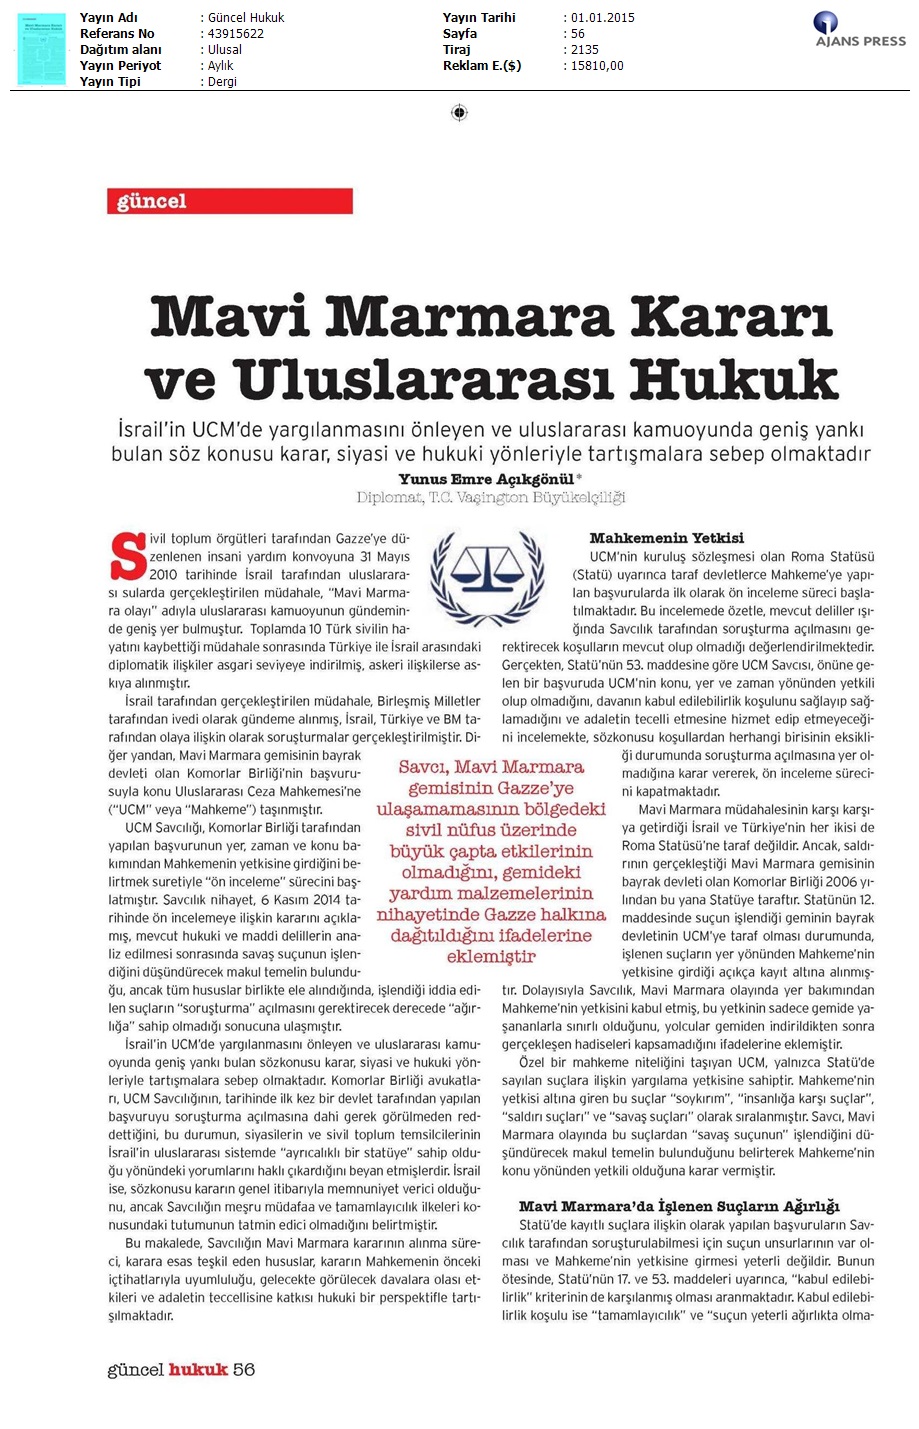 Mavi Marmara Kararı Ve Uluslararası Hukuk